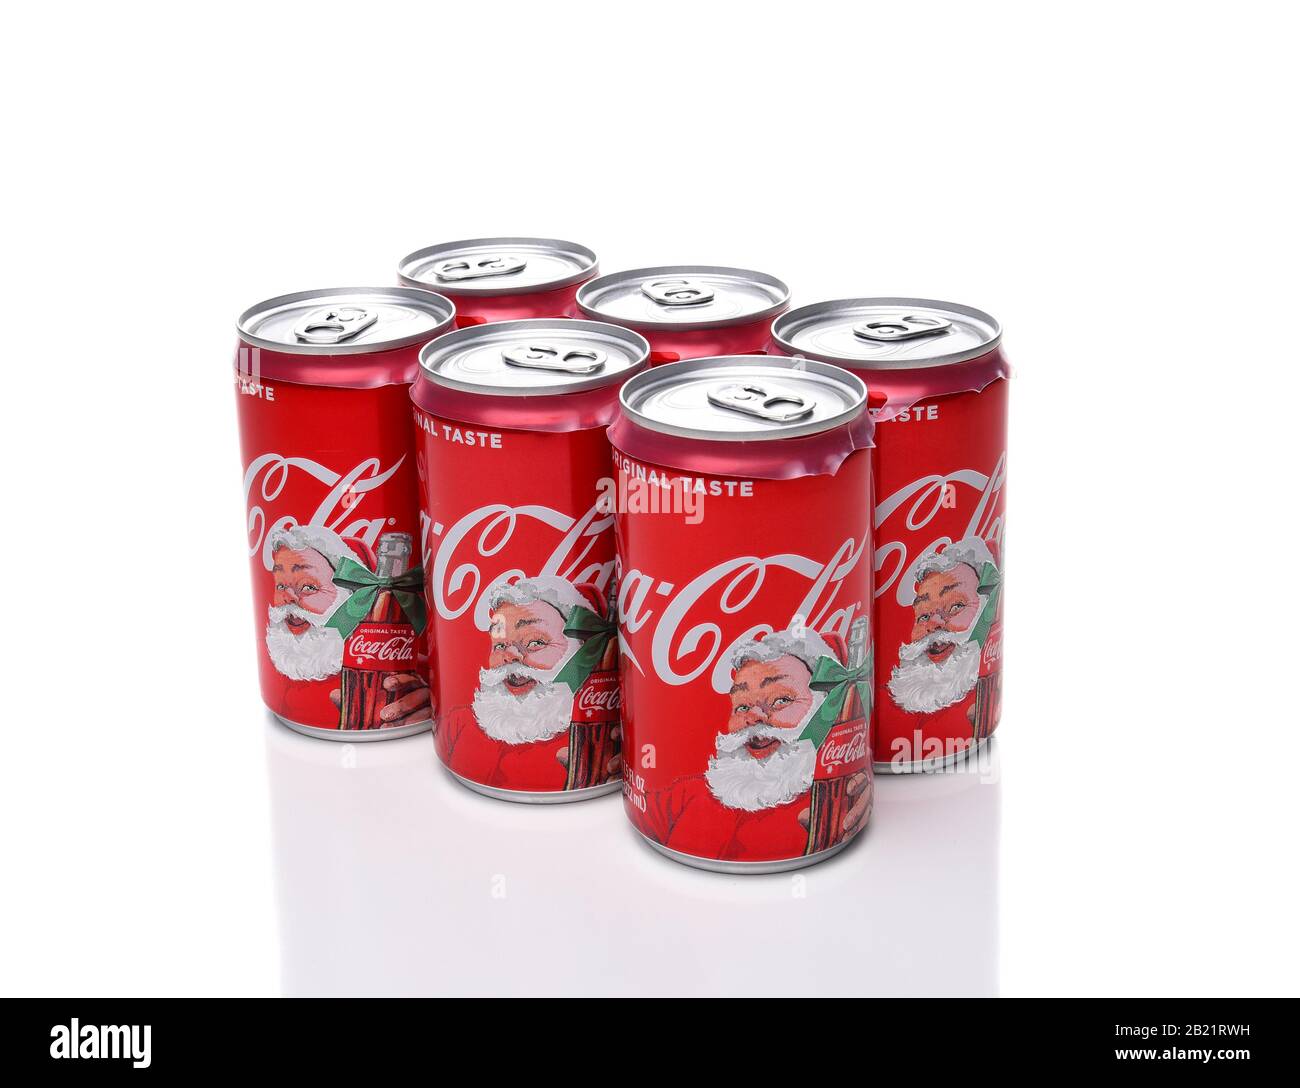 Irvine, CALIFORNIA - 17 DICEMBRE 2017: Sei confezioni di lattine di Natale Coca-Cola. Le lattine in edizione limitata sono dotate di Babbo Natale per la stagione delle feste. Foto Stock